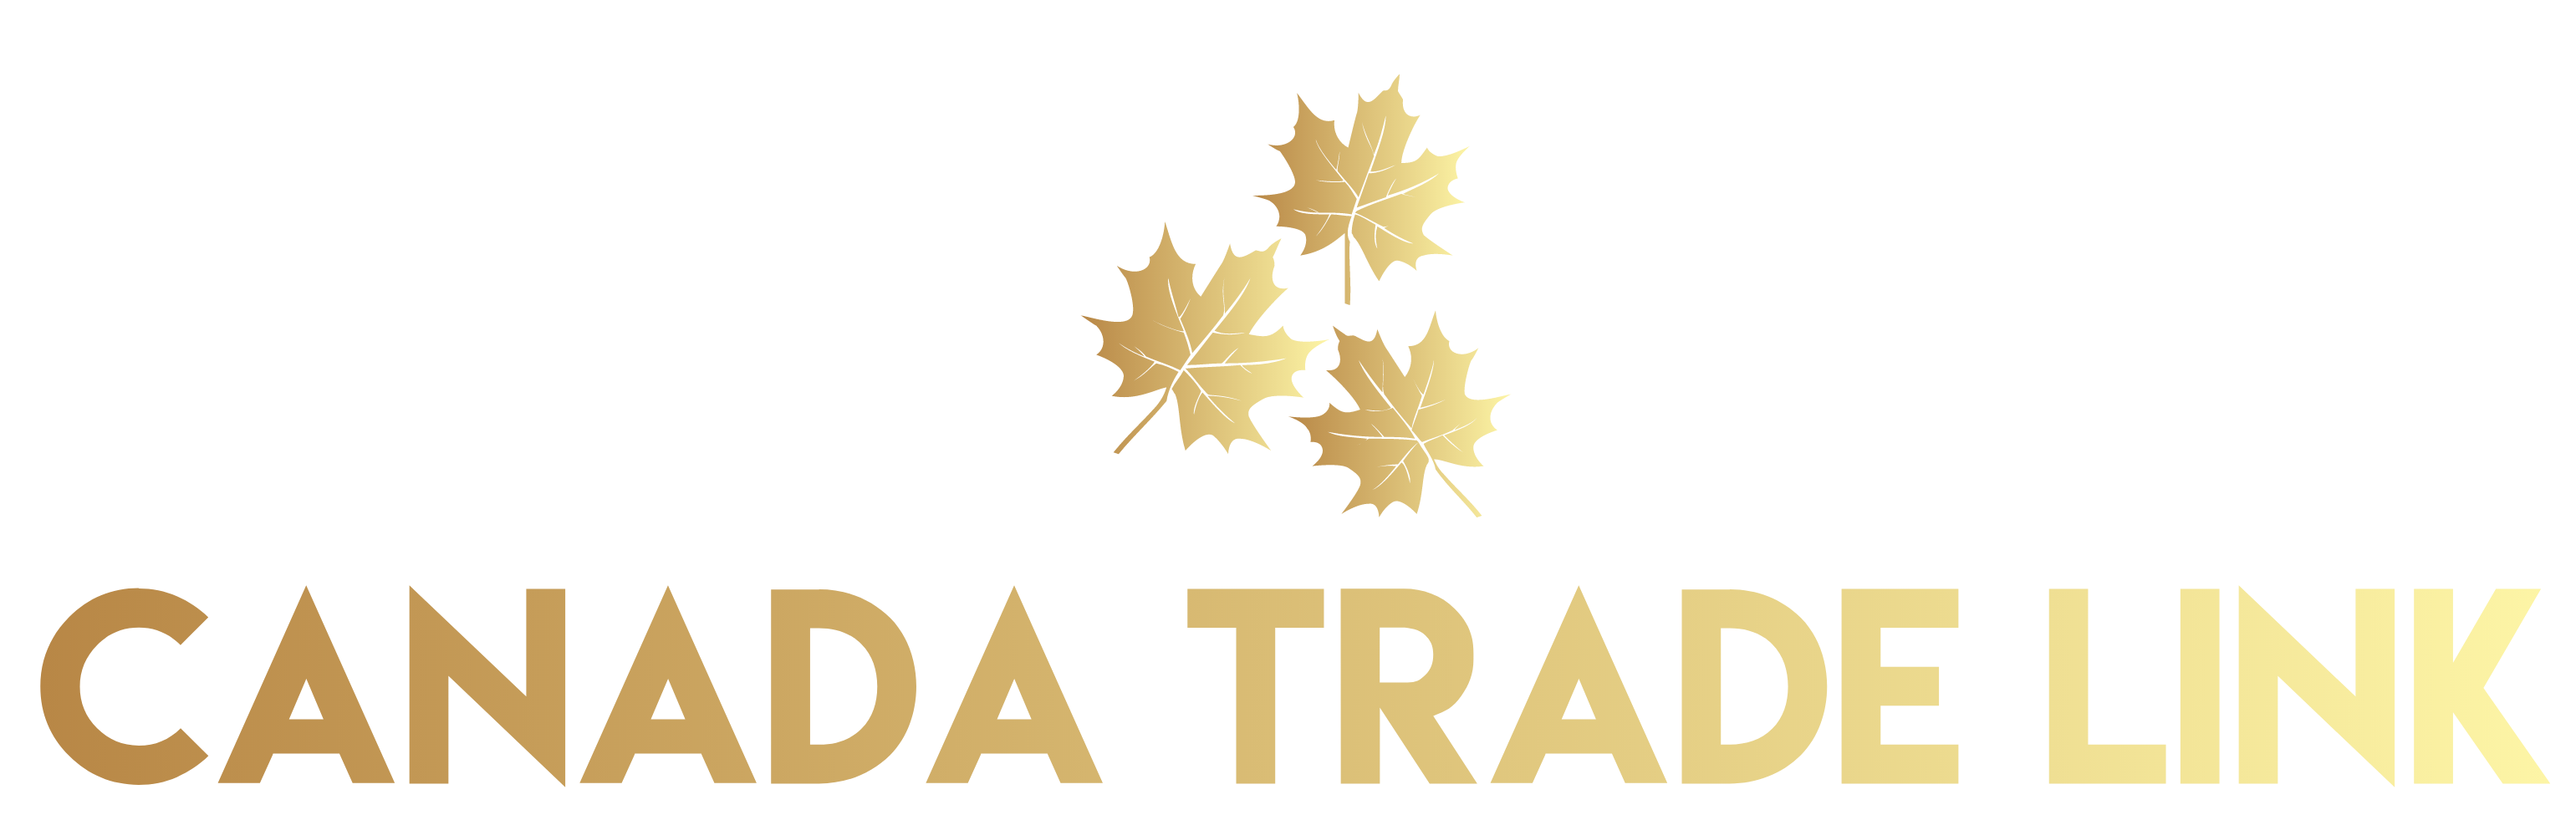 Canada Trade Link